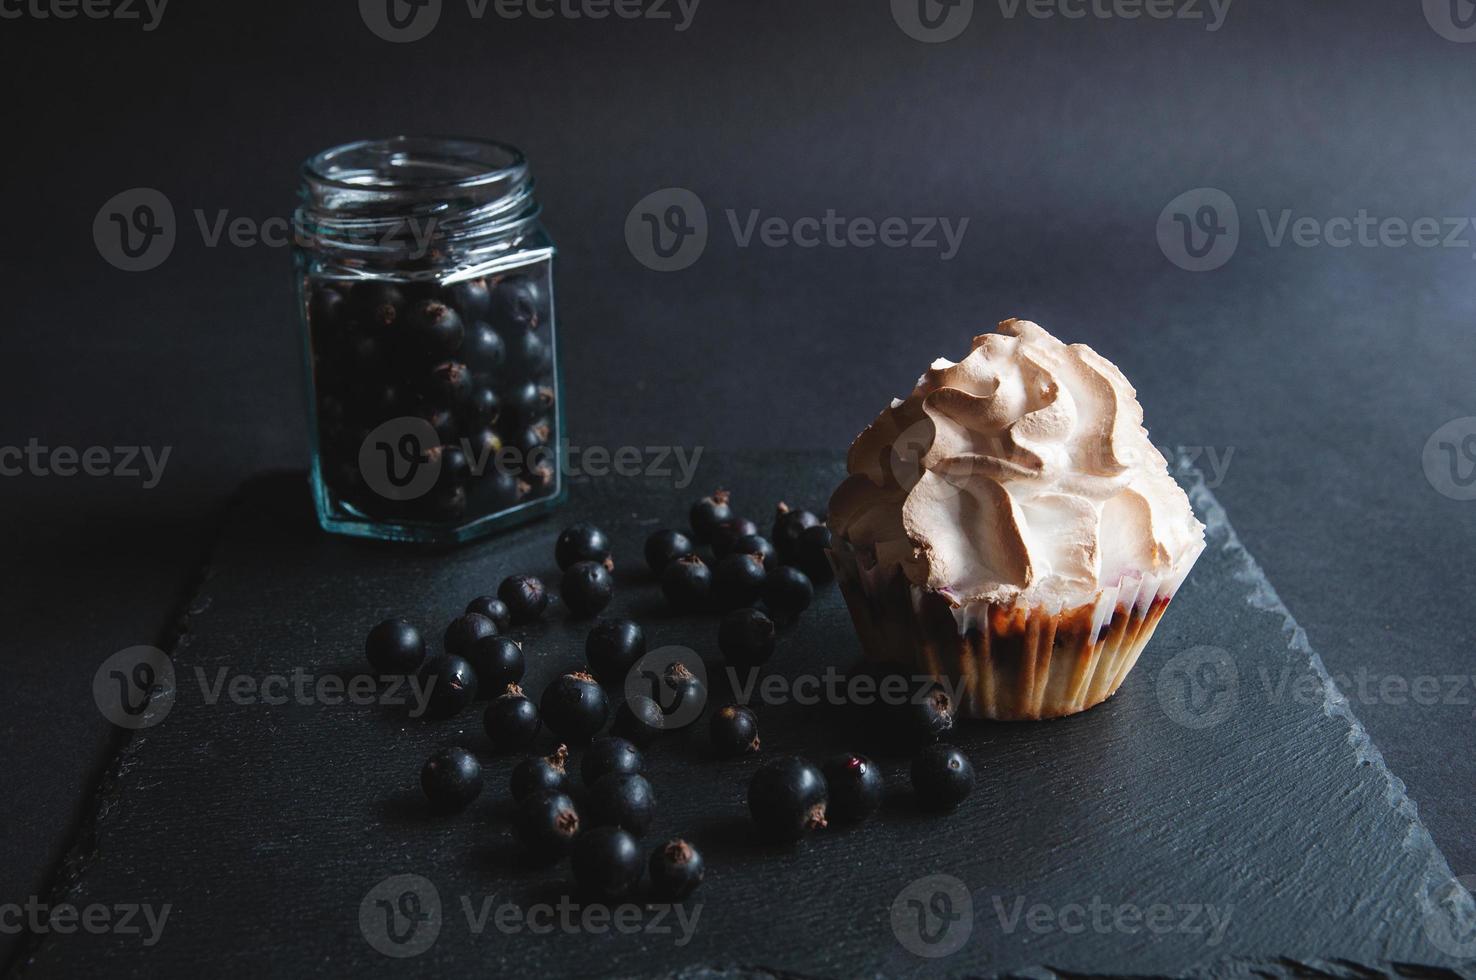 smakelijk gebakken vanille muffin met krenten op een zwart bord. foto